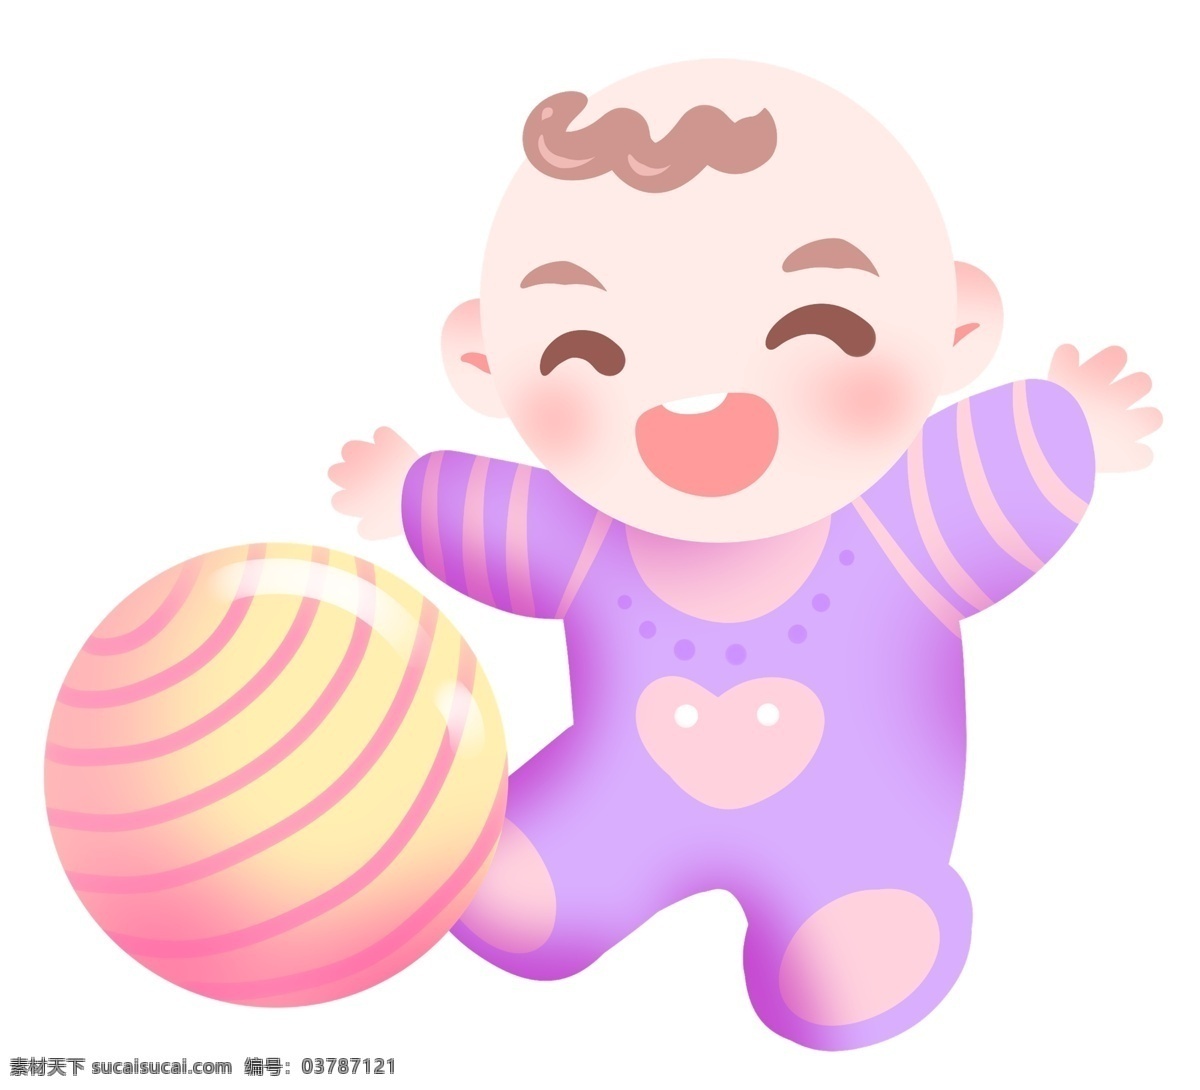 玩 皮球 婴儿 宝贝 插画 彩色的皮球 卡通插画 婴儿插画 宝贝插画 可爱宝贝 婴儿宝贝 玩皮球的孩子